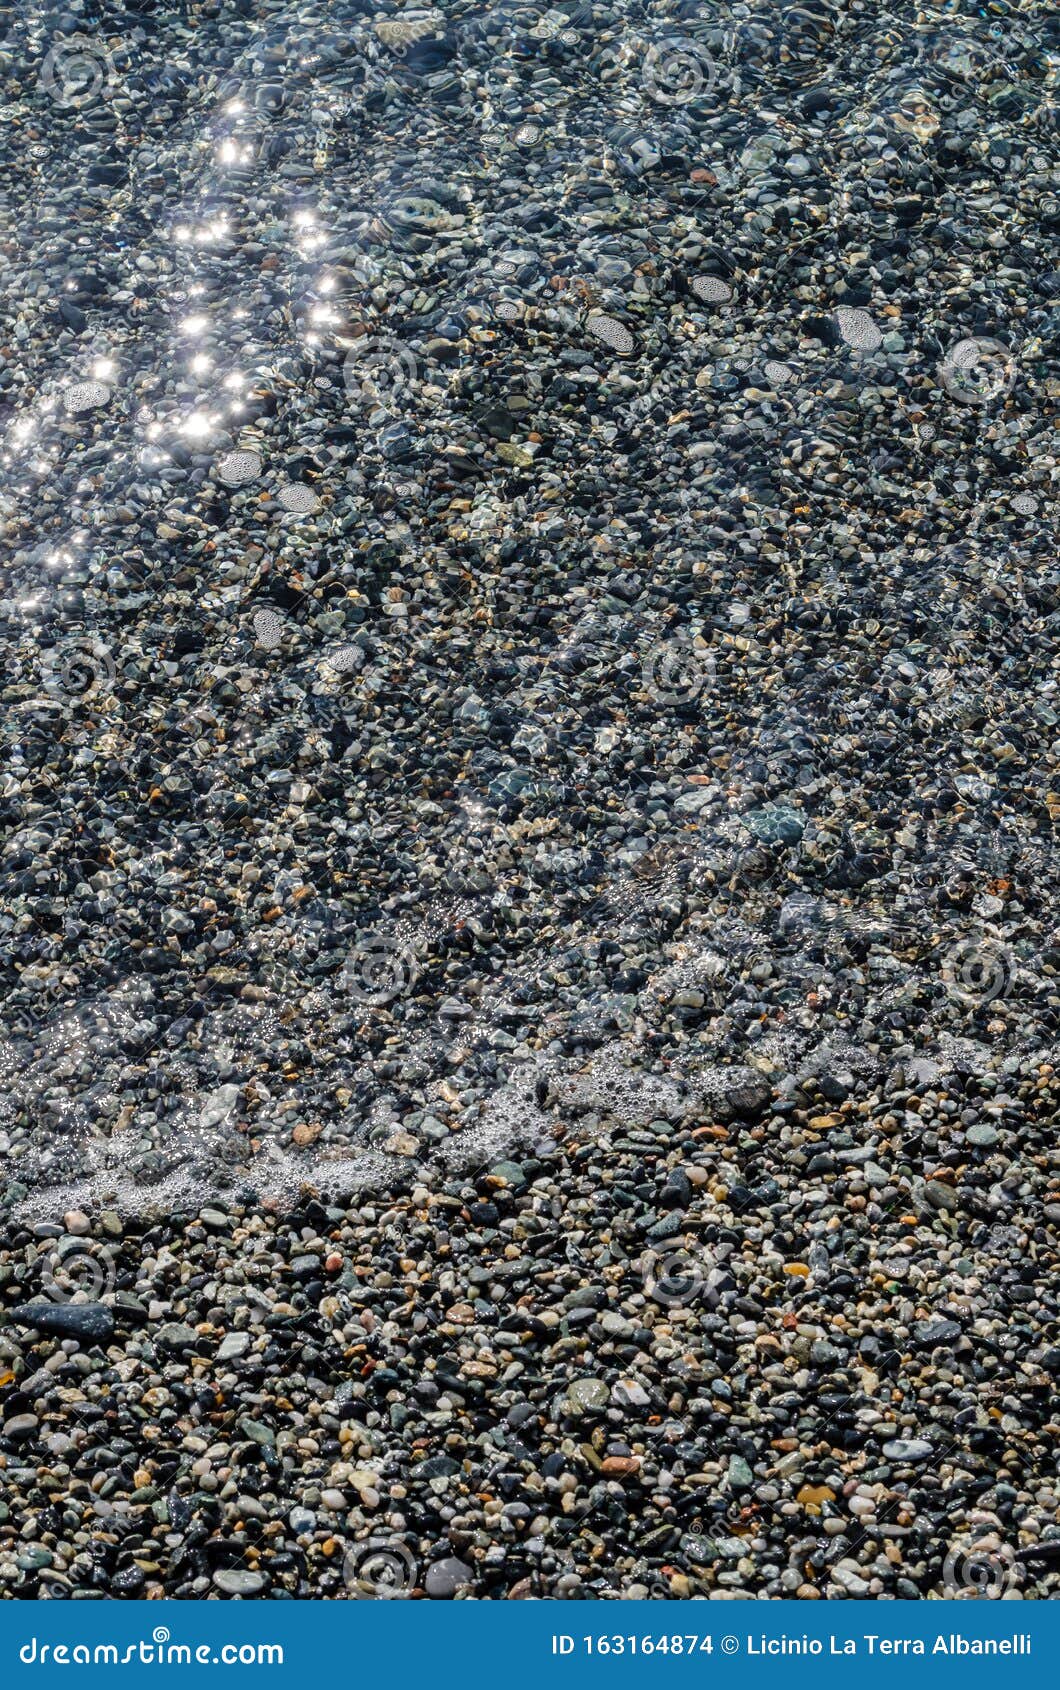 river pebbles